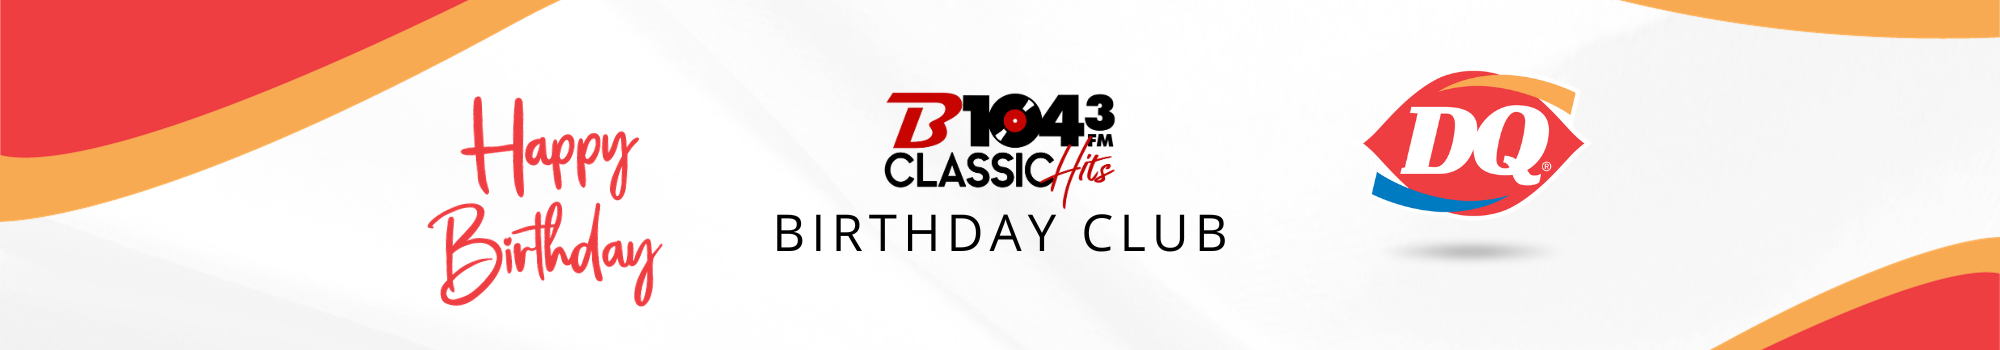 B104.3 Birthday Club